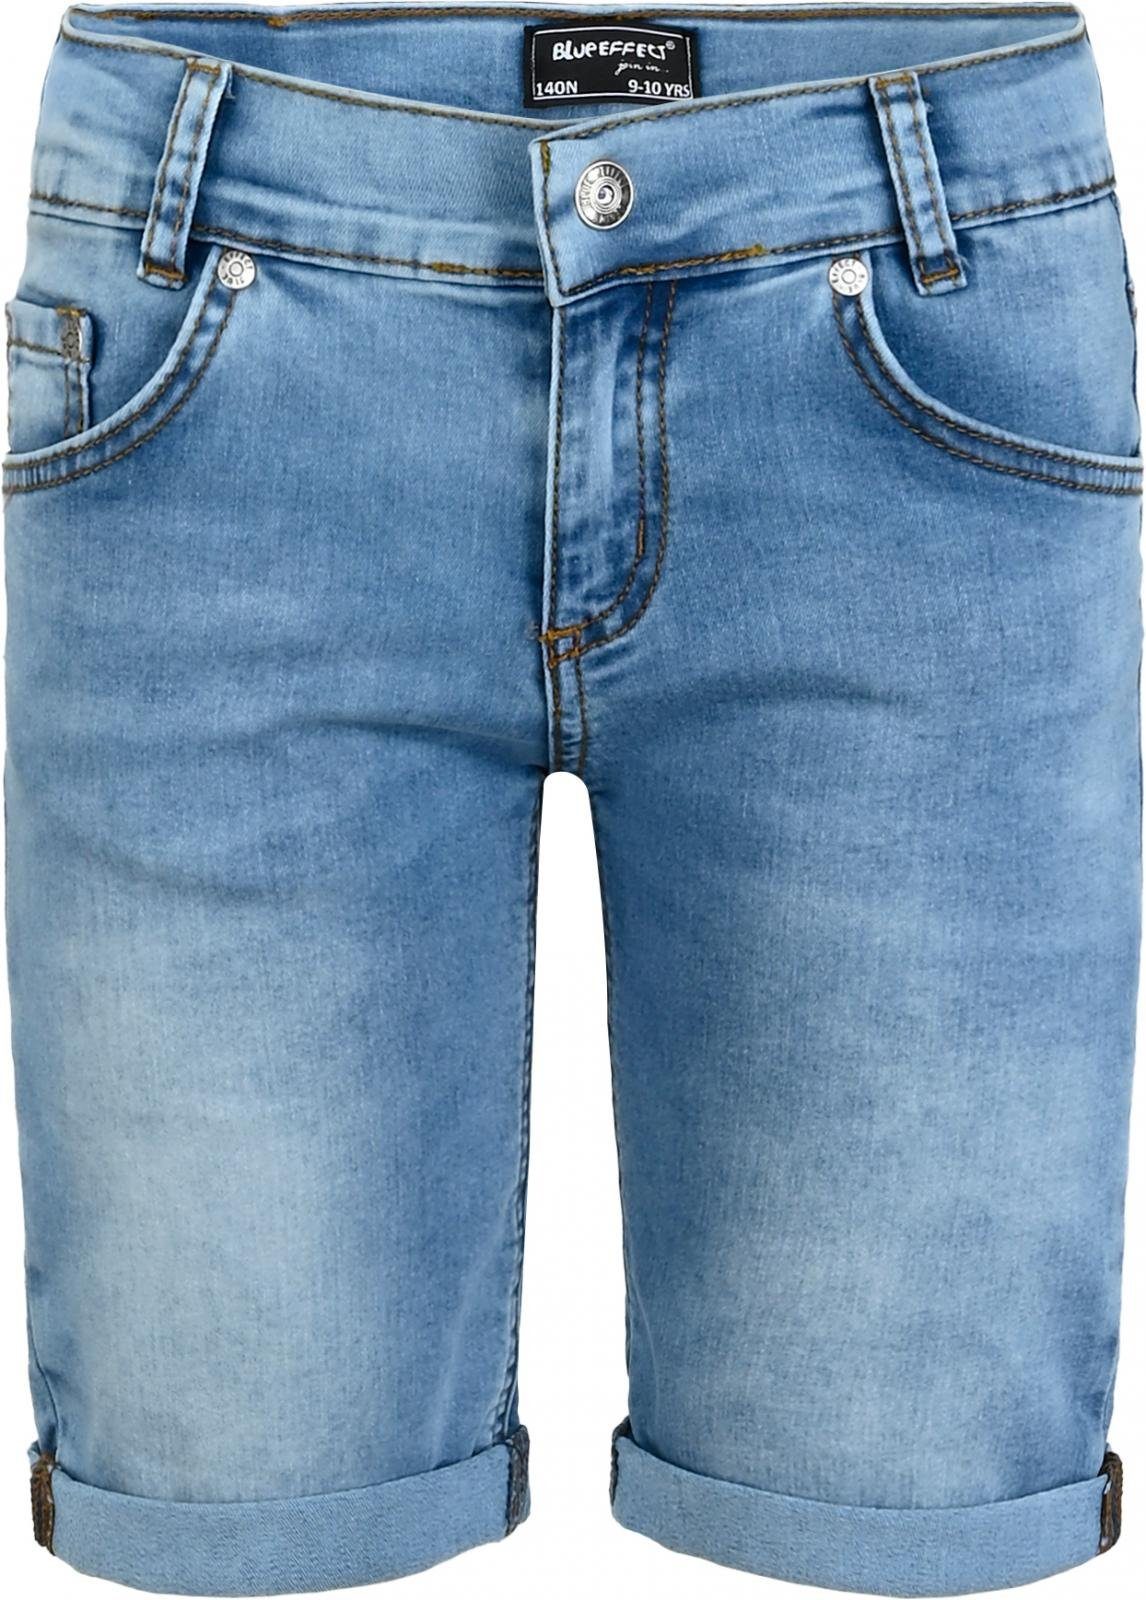 Plus EFFECT Größe BLUE Jeansshorts Jeans-Shorts